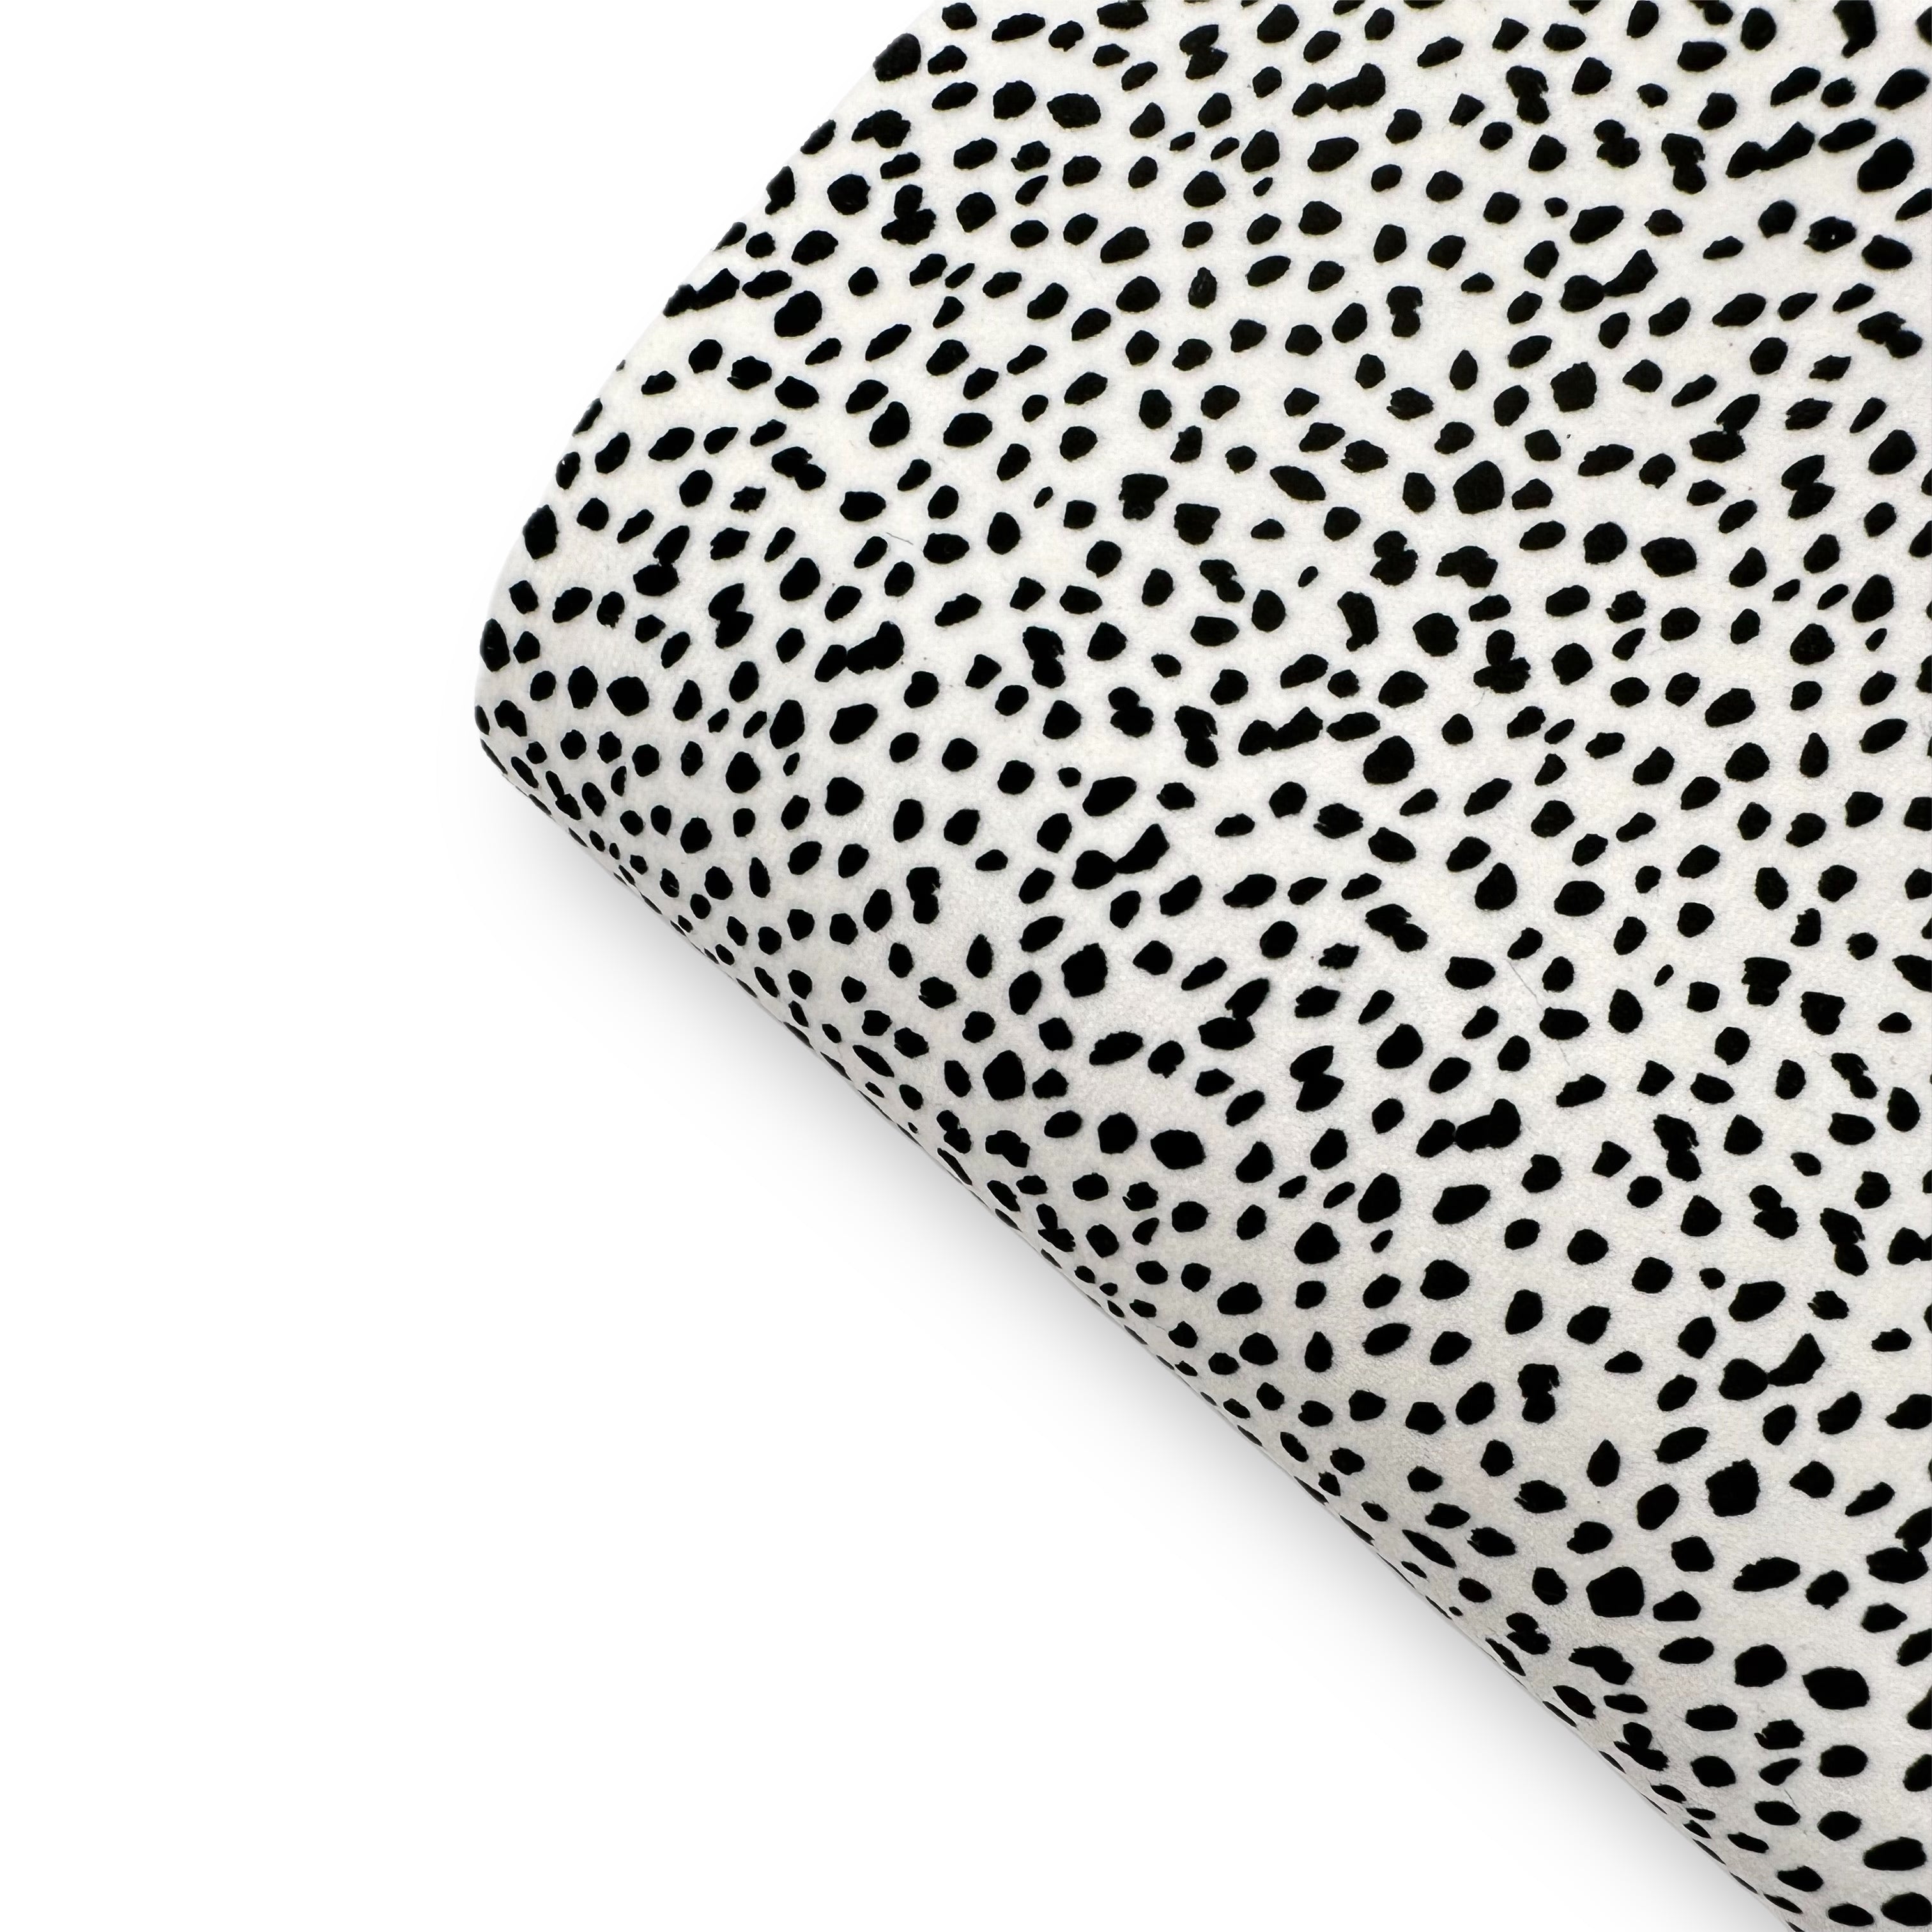 Dalmatian- Felt, Suede, Velvet or Satin Premium Fabric Sheets